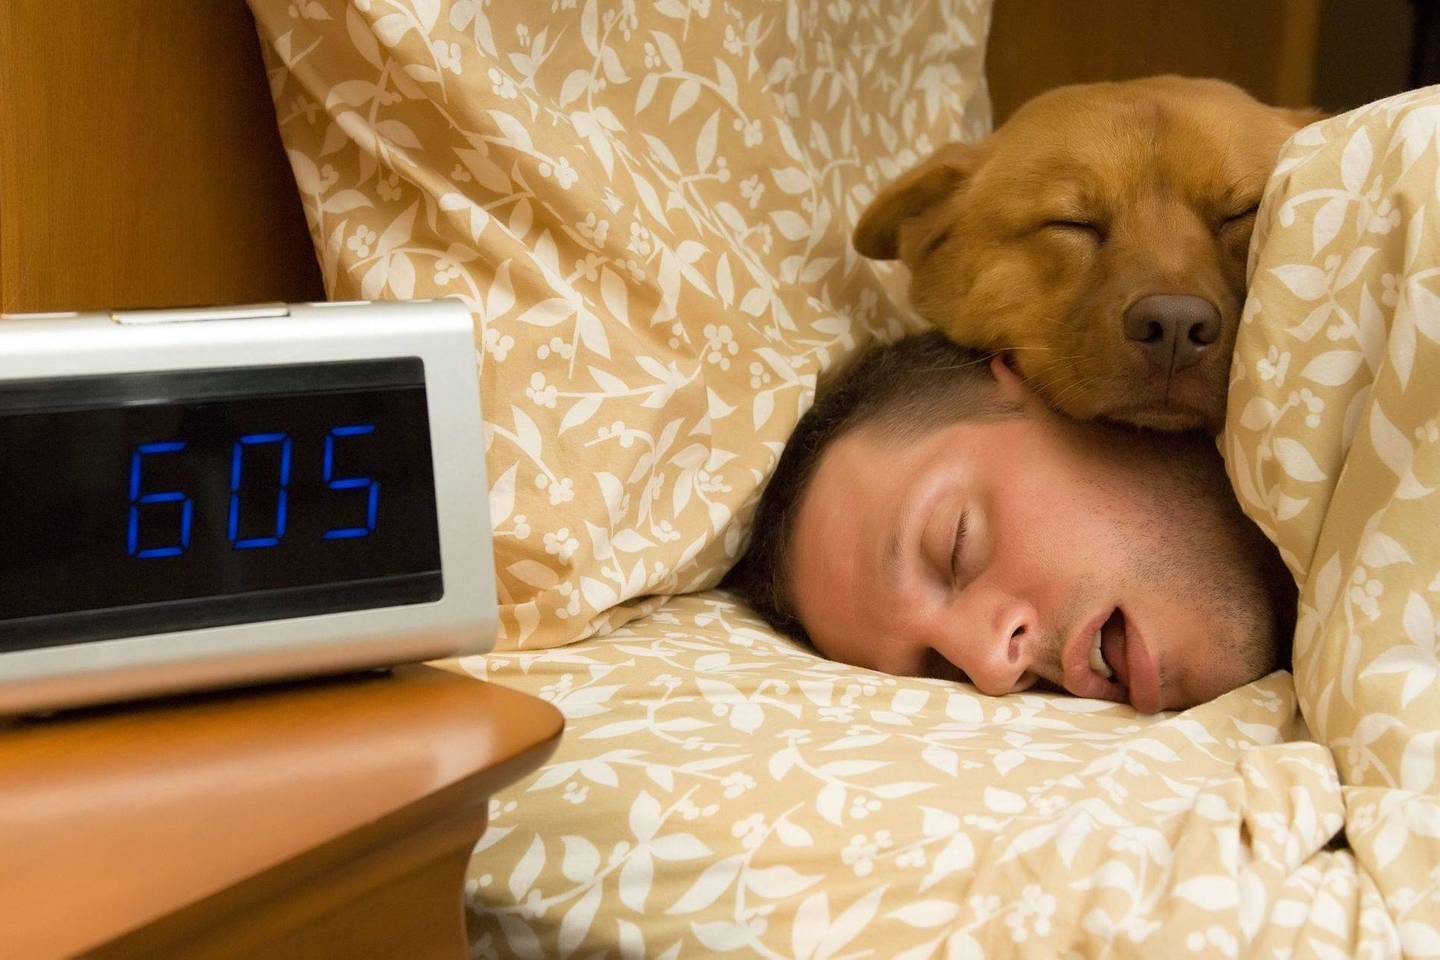 Jeigu užsirašysite vidury nakties kilusias mintis, tai padės jums lengviau užmigti, nei pusę nakties galvojant apie jas.<br>123 rf nuotr.